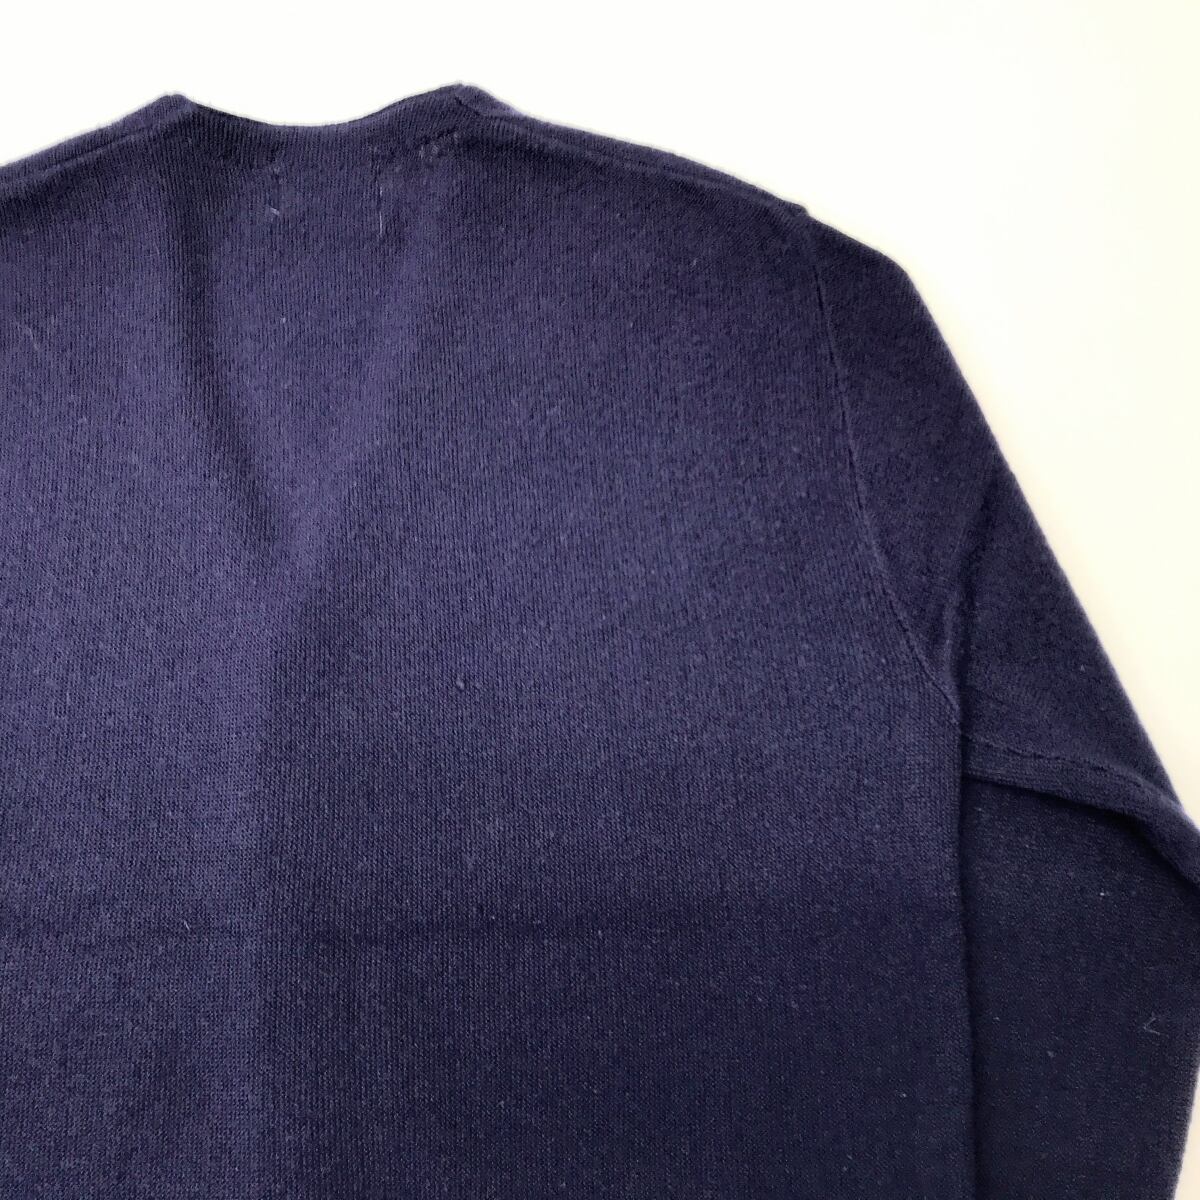 ミネアポリス刺繍ワンポイントロゴ grunge sweat 5分袖 ネイビー